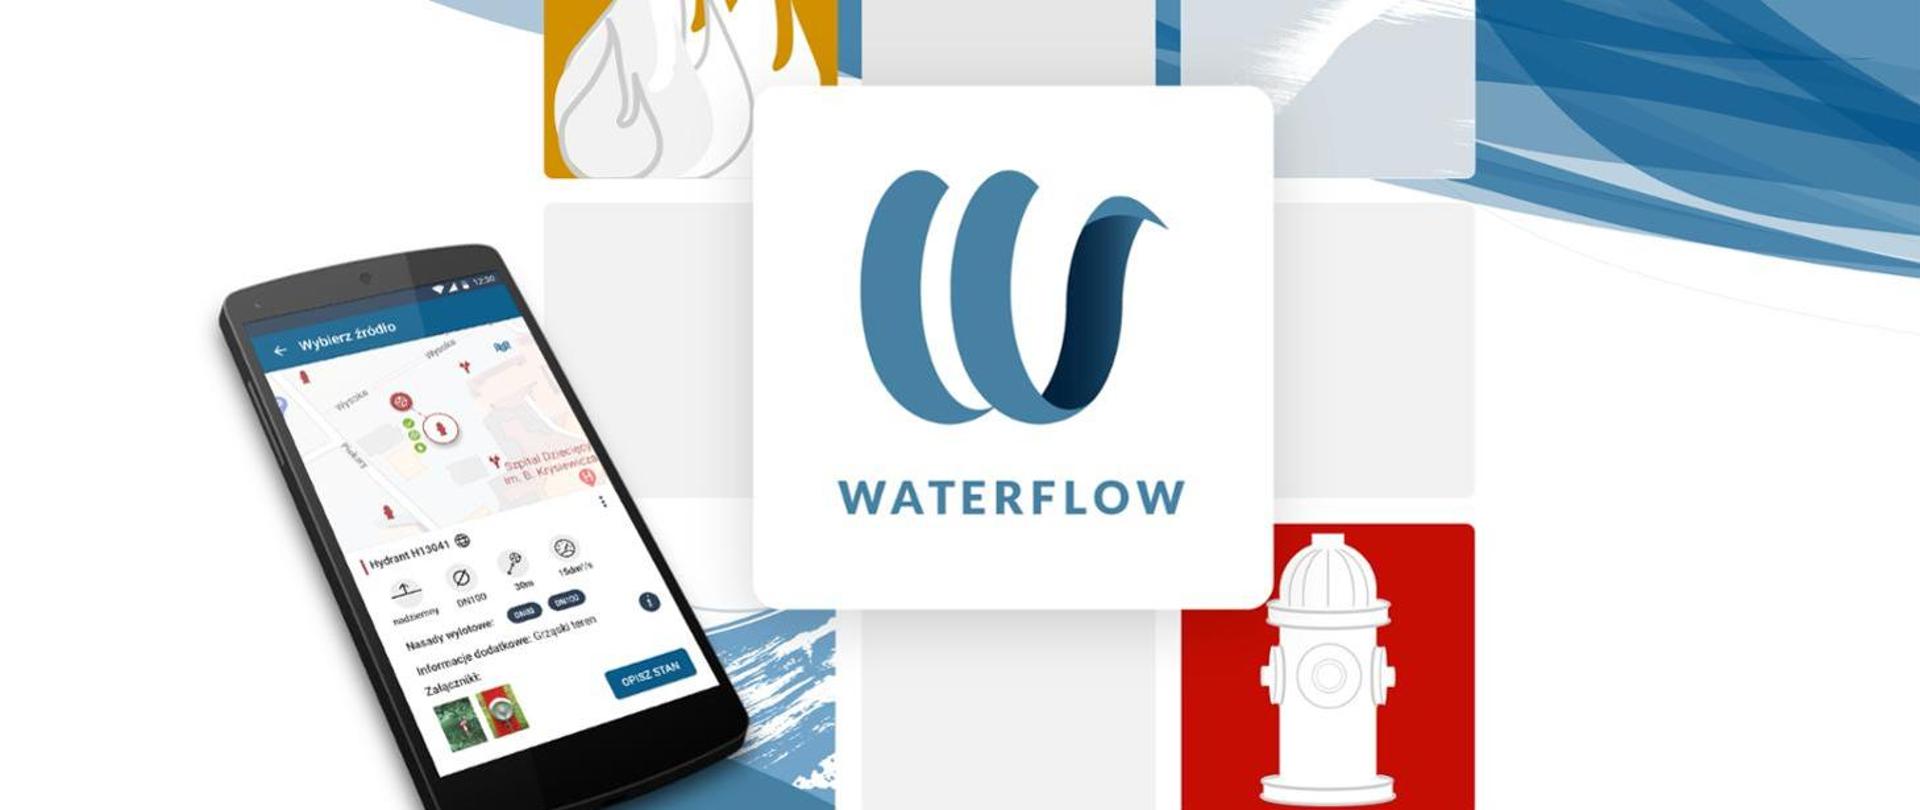 Zdjęcie przedstawia plakat do aplikacji WATERFLOW, na którym znajduje się telefon komórkowy, napis WATERFLOW i czerwony hydrant.